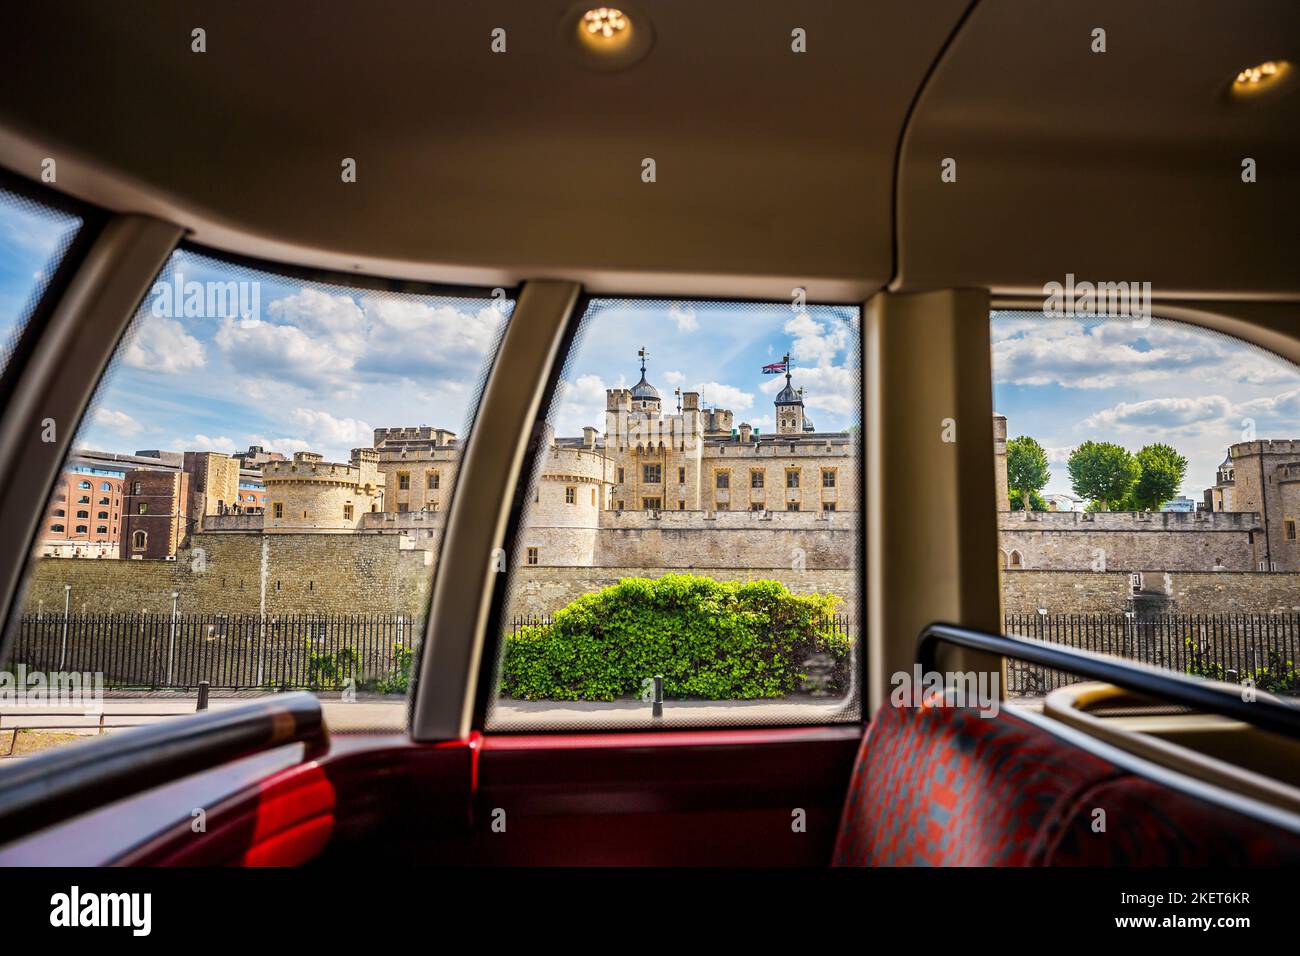 Ein routemaster Red London Bus blickt auf den Tower von london.das Bild wurde durch die Fenster des Busses aufgenommen und zeigt den Tower mit Union Jack Flack Stockfoto